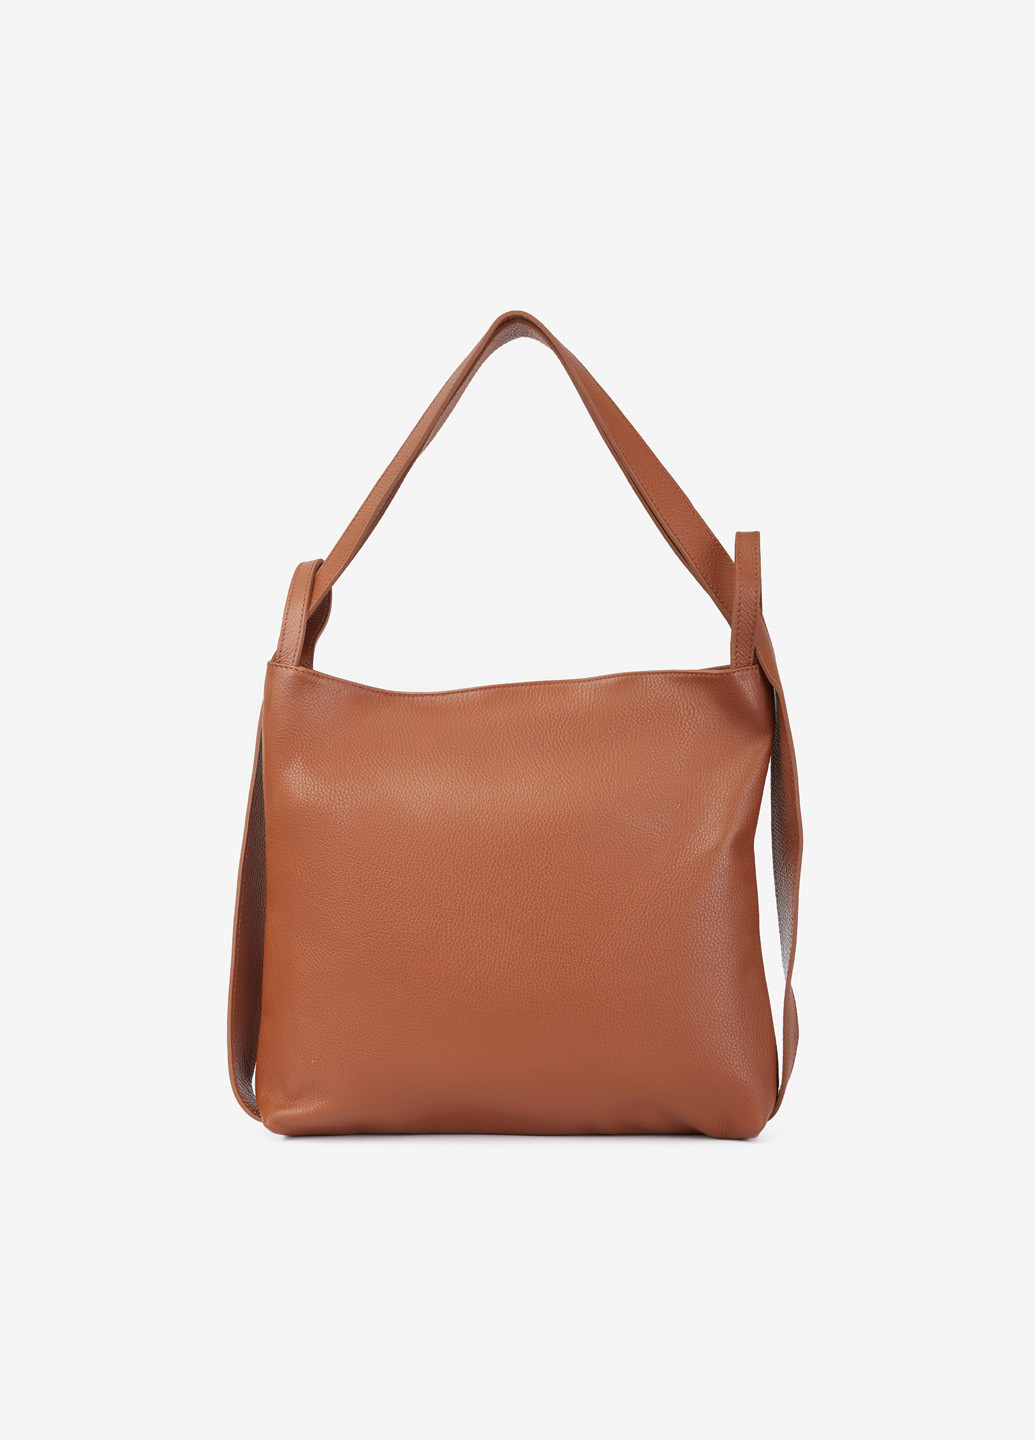 Сумка-рюкзак женская кожаная шоппер большая Shopper Regina Notte (265403246)